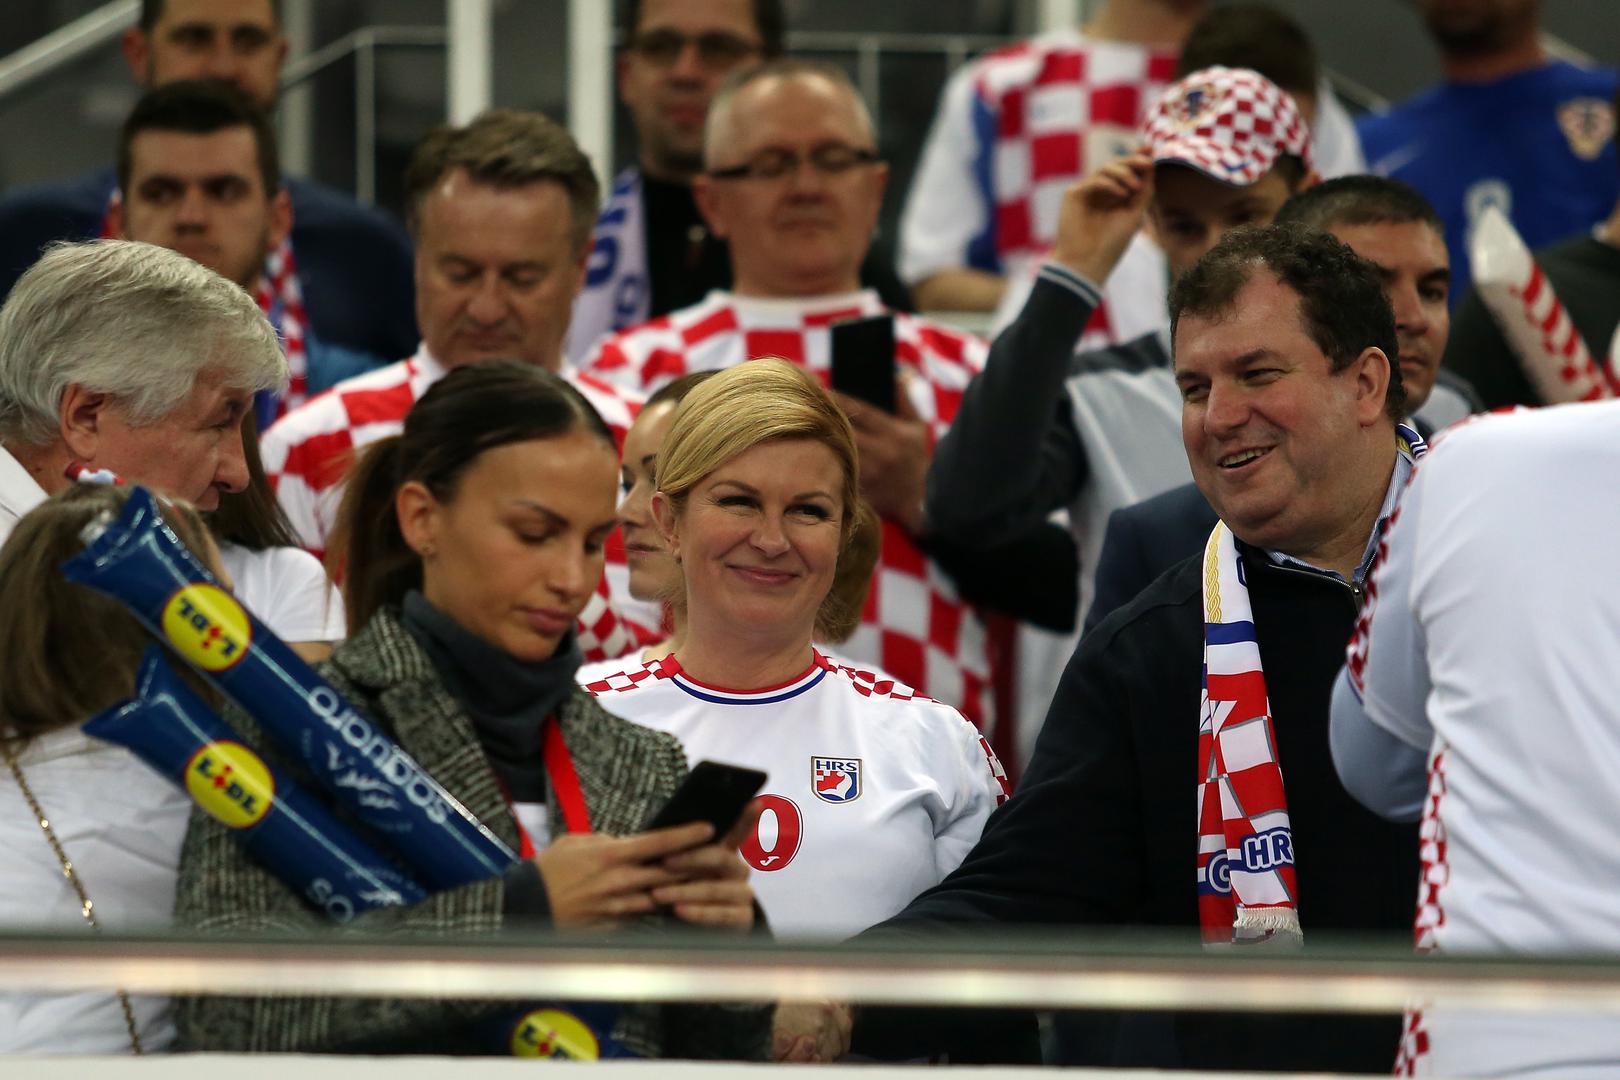 Predsjednica Republike Hrvatske Kolinda Grabar-Kitarović ponovno je bila vatrena navijačica, a fotografirala se i s onima koju su ju zamolili za zajedničku fotografiju.